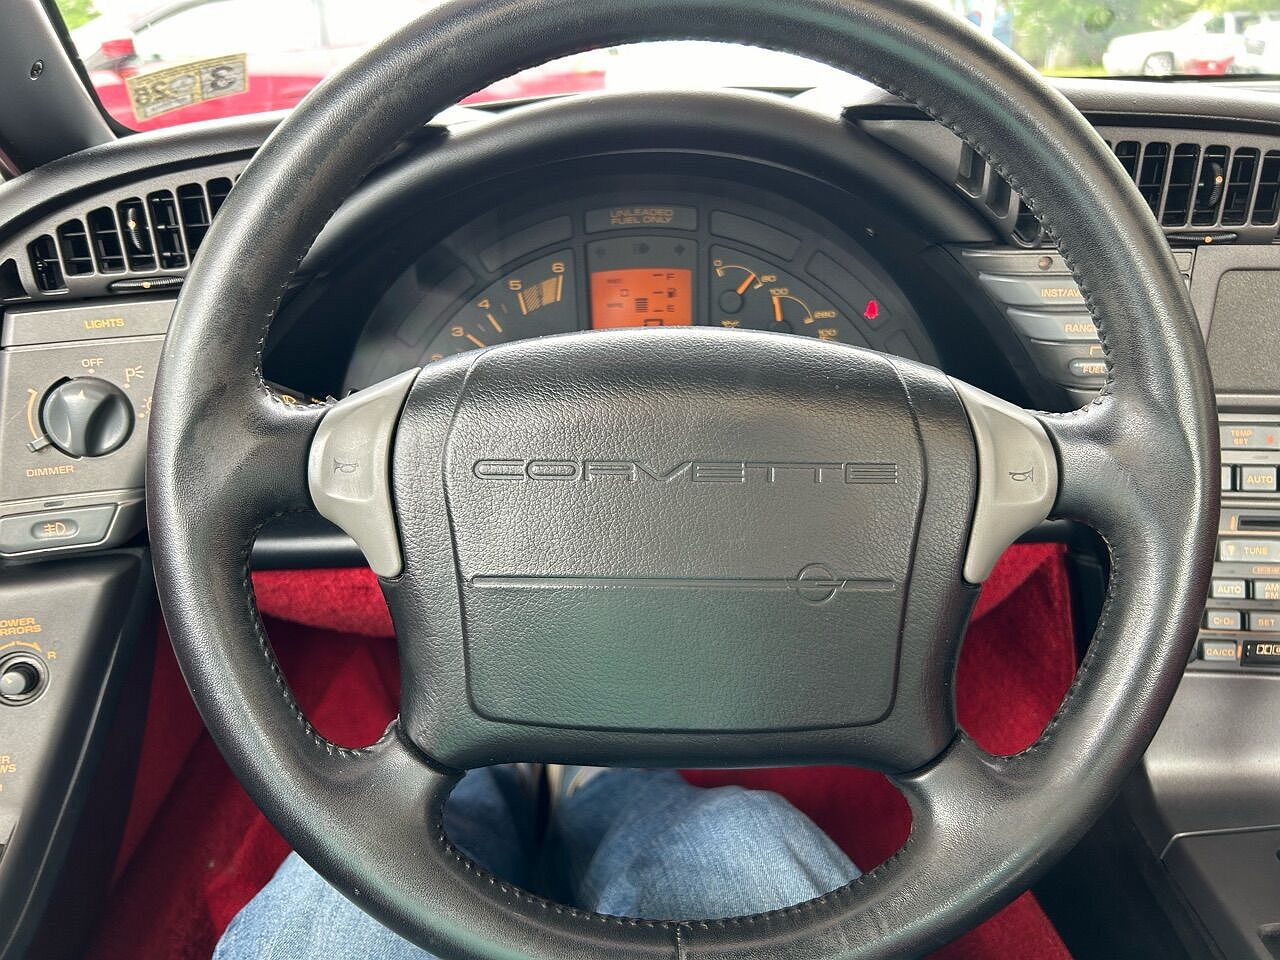 1990 Chevrolet Corvette null image 20